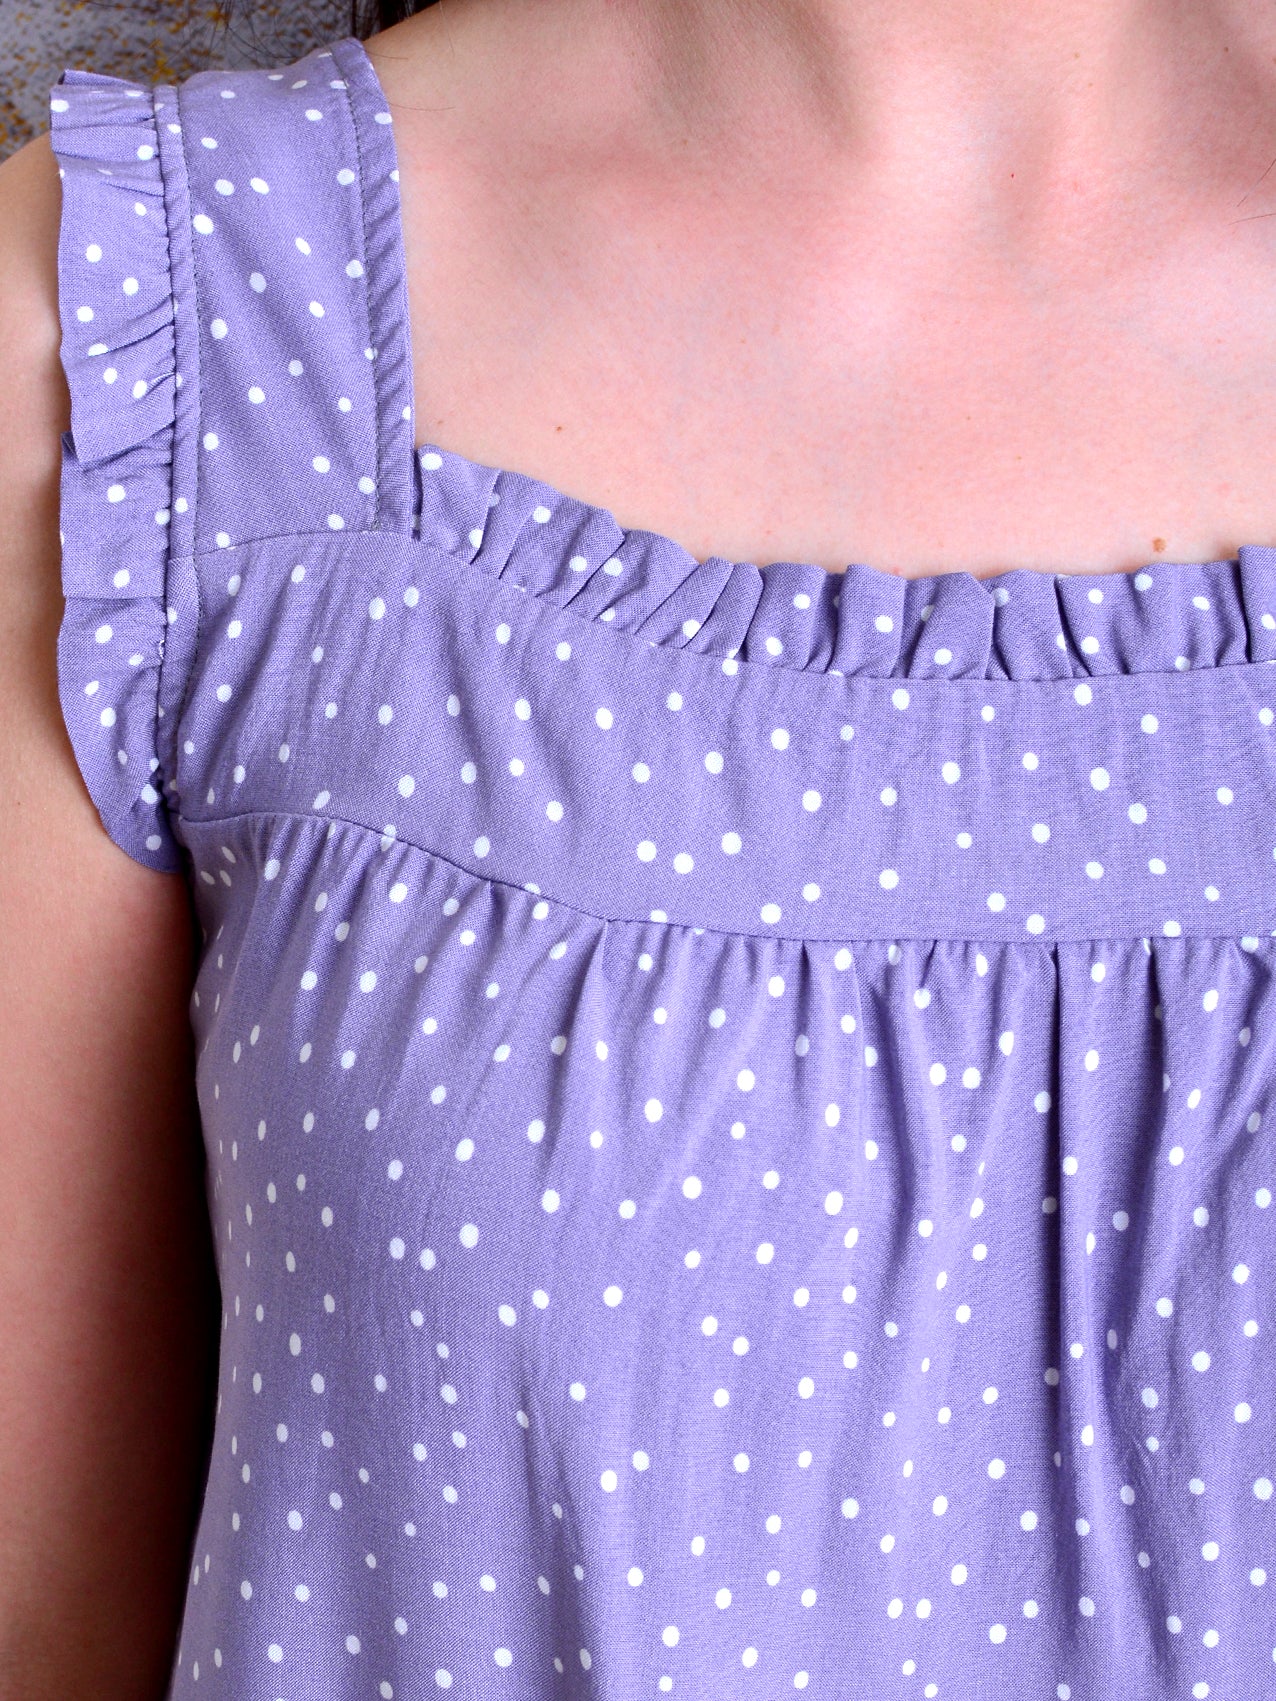 gepunktetes Sommerkleid NICOLETTA flieder Rüschen Punkte lila Polka Dots Kleid von STADTKIND